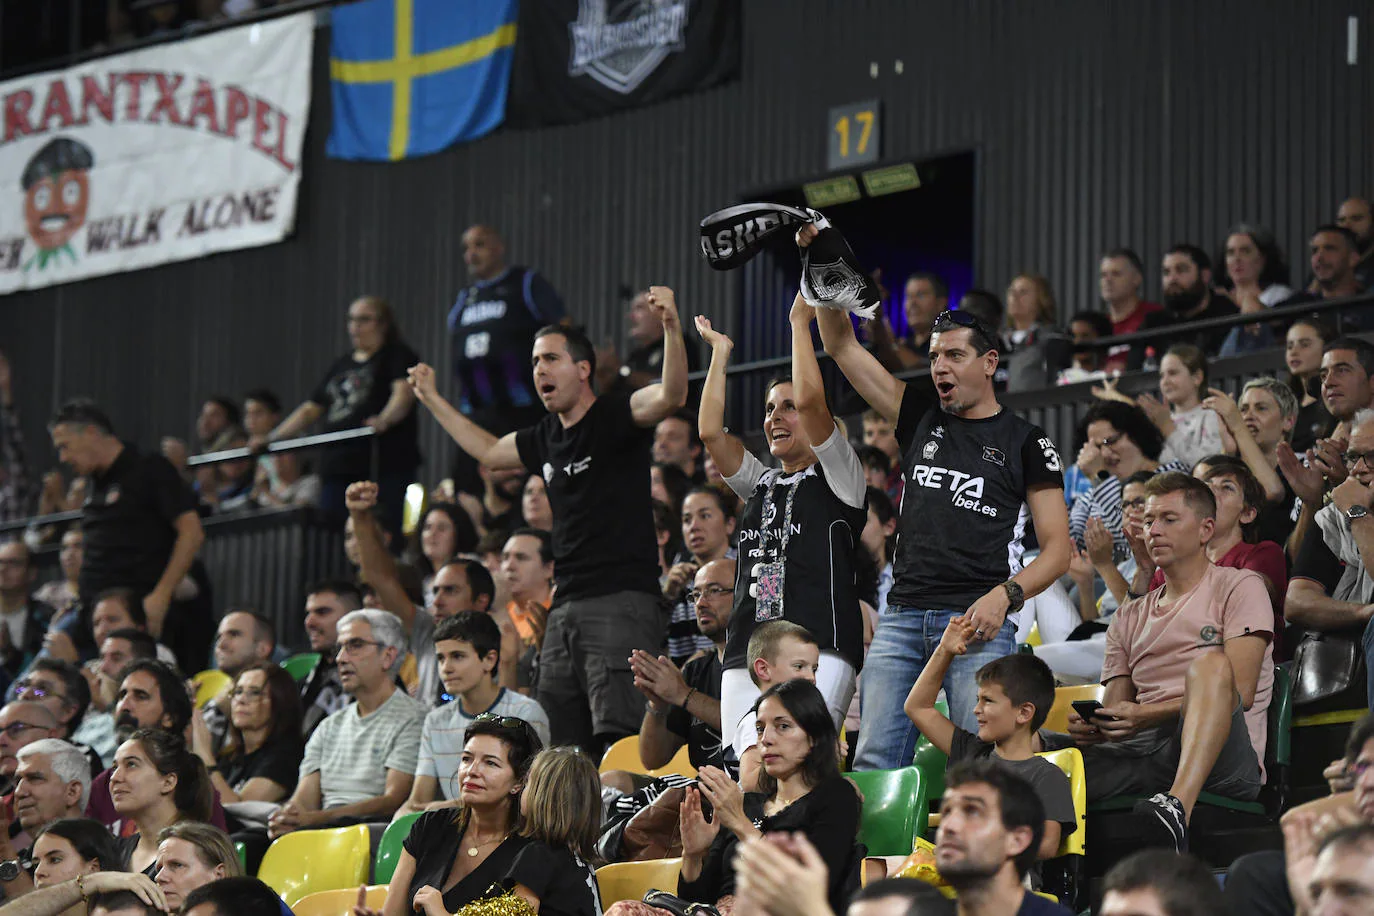 Fotos: Arrollador Bilbao Basket: el Surne gana al Betis (85-70) en Miribilla